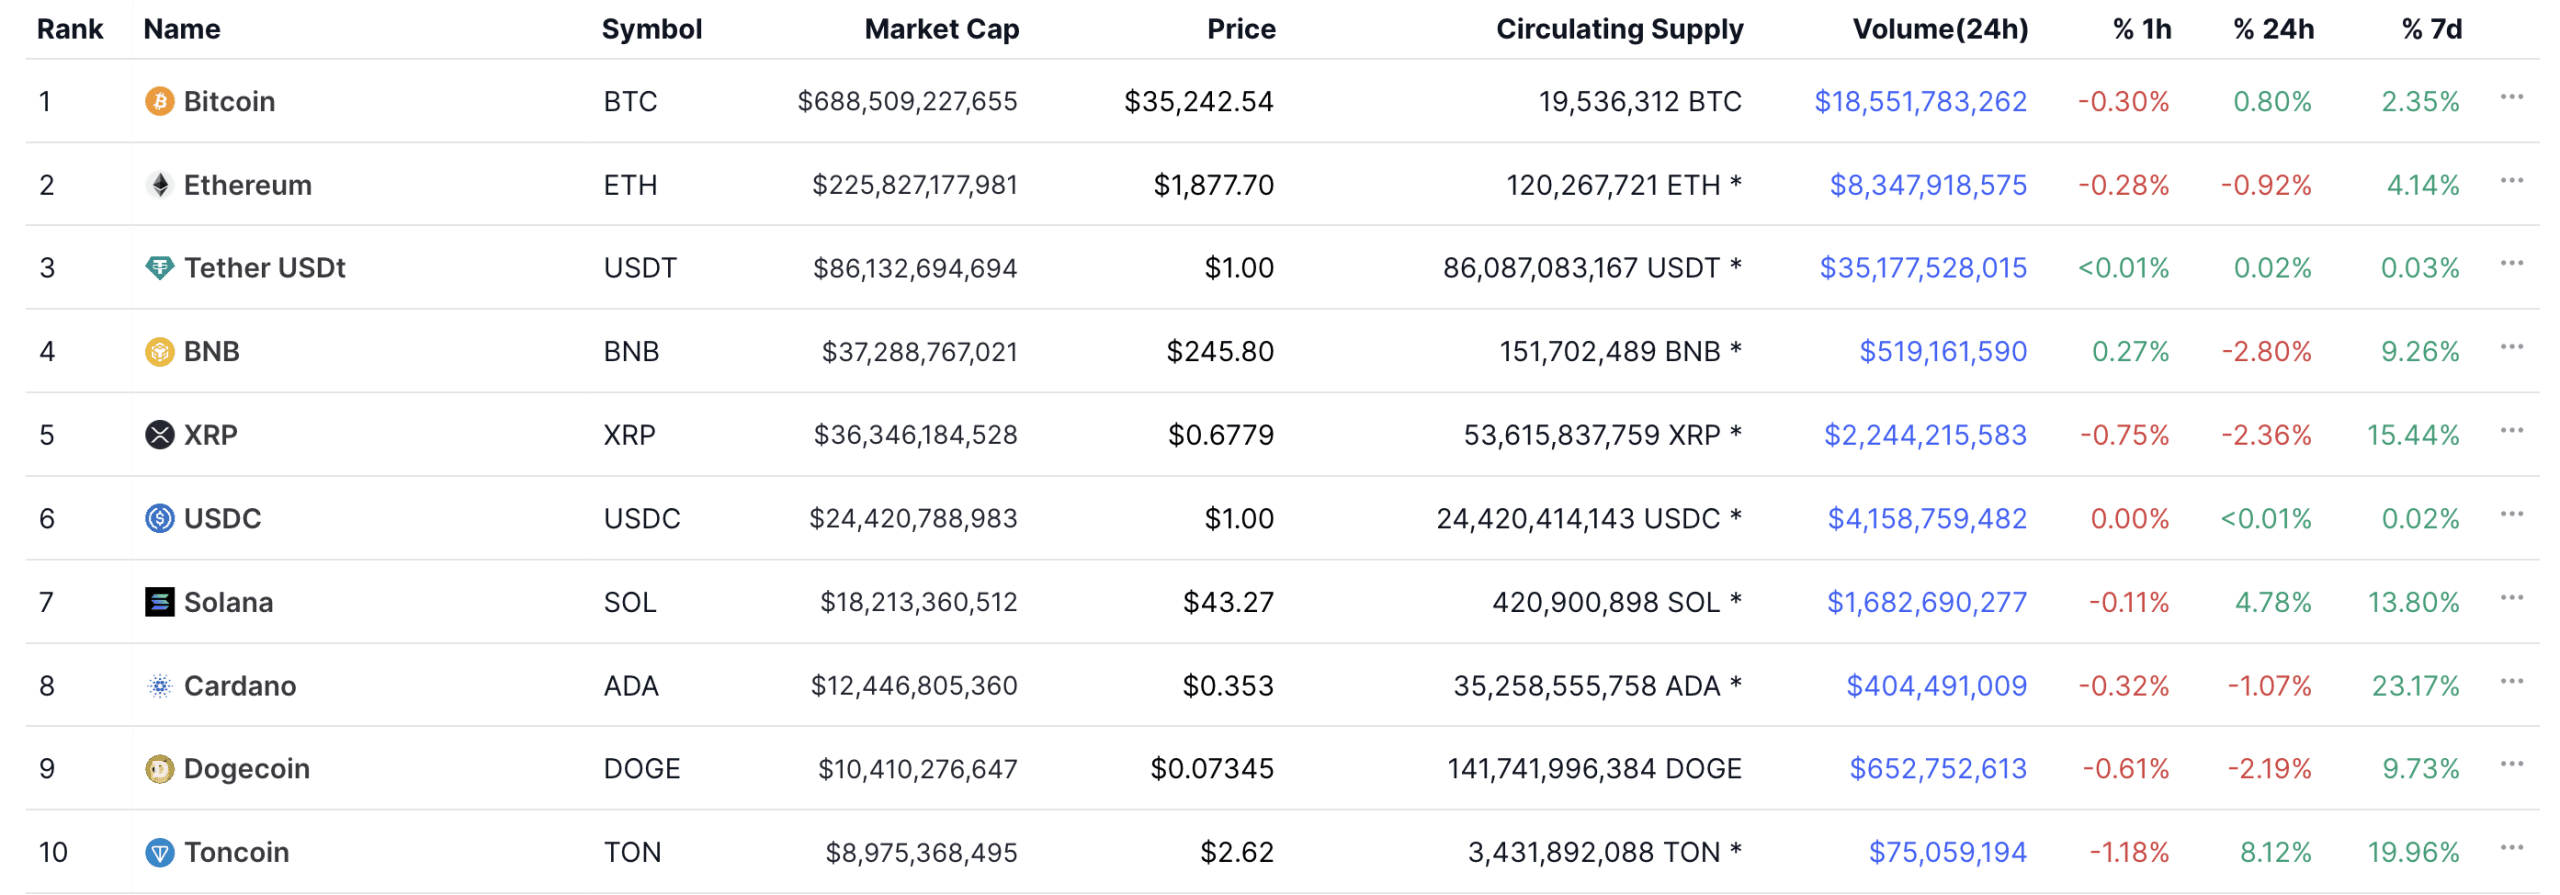 Crypto Market Cap Ranking